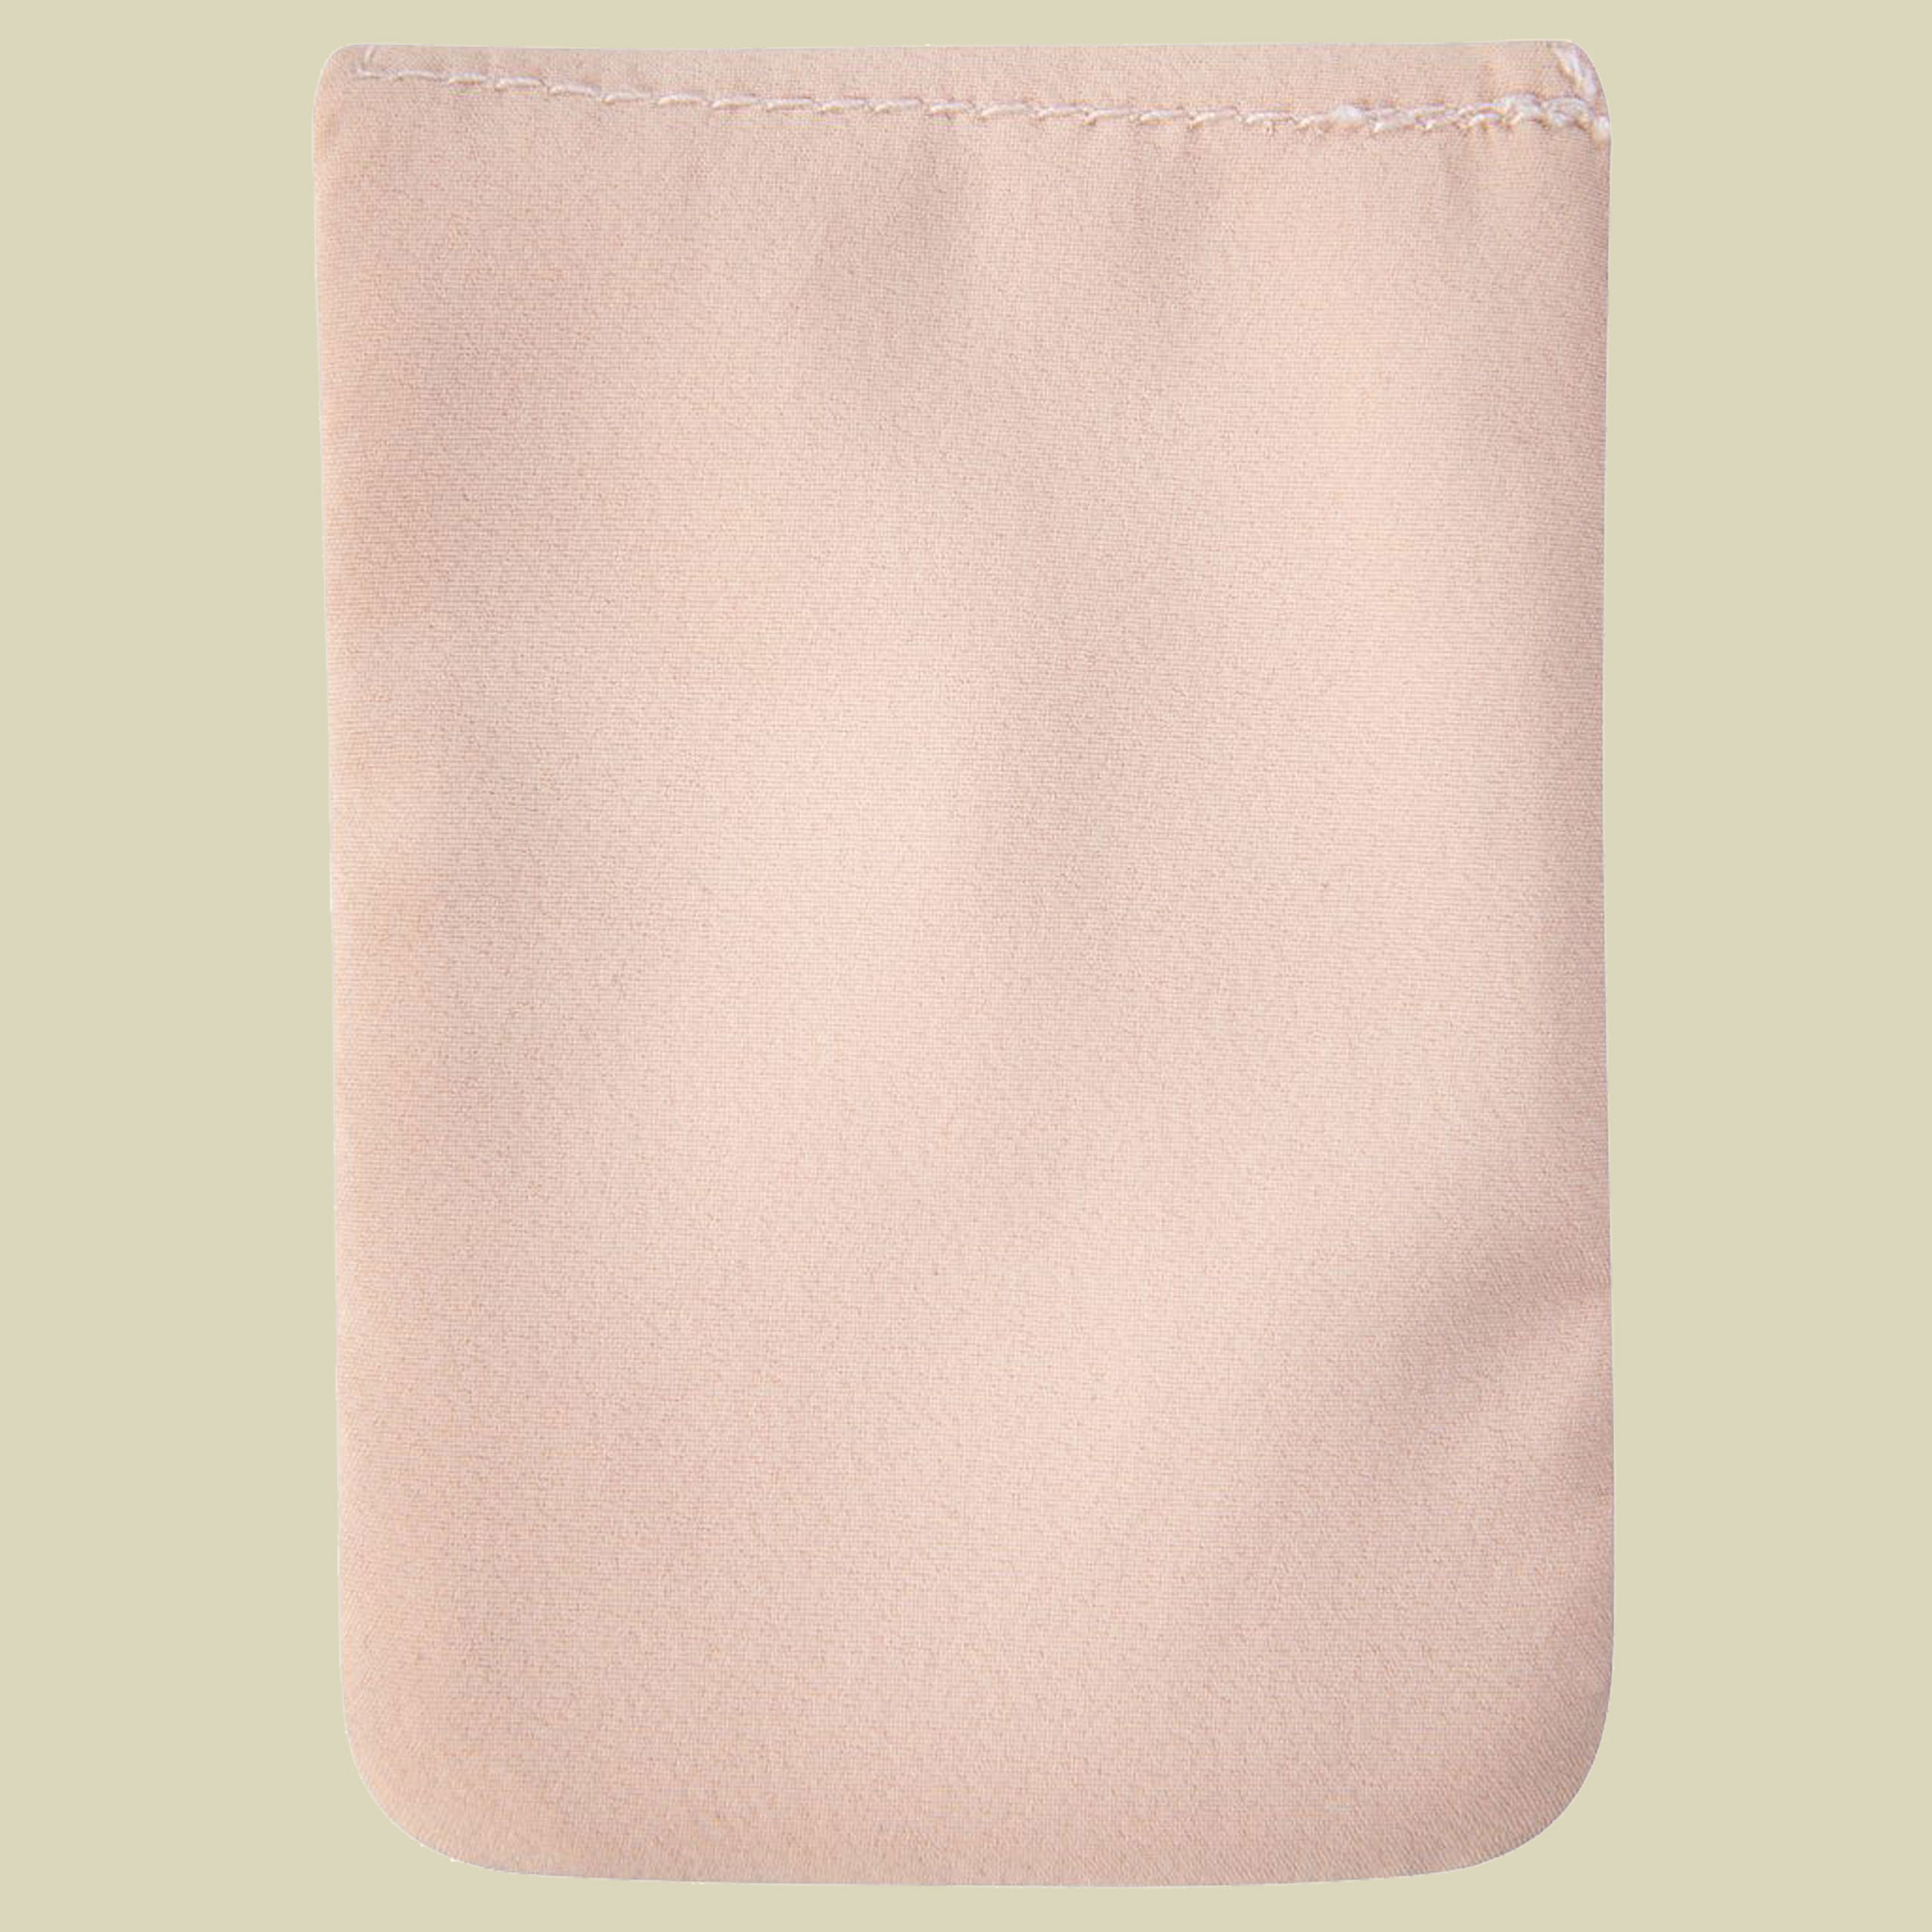 Soft Bra Pocket Maße 10 x 7 cm Farbe nude